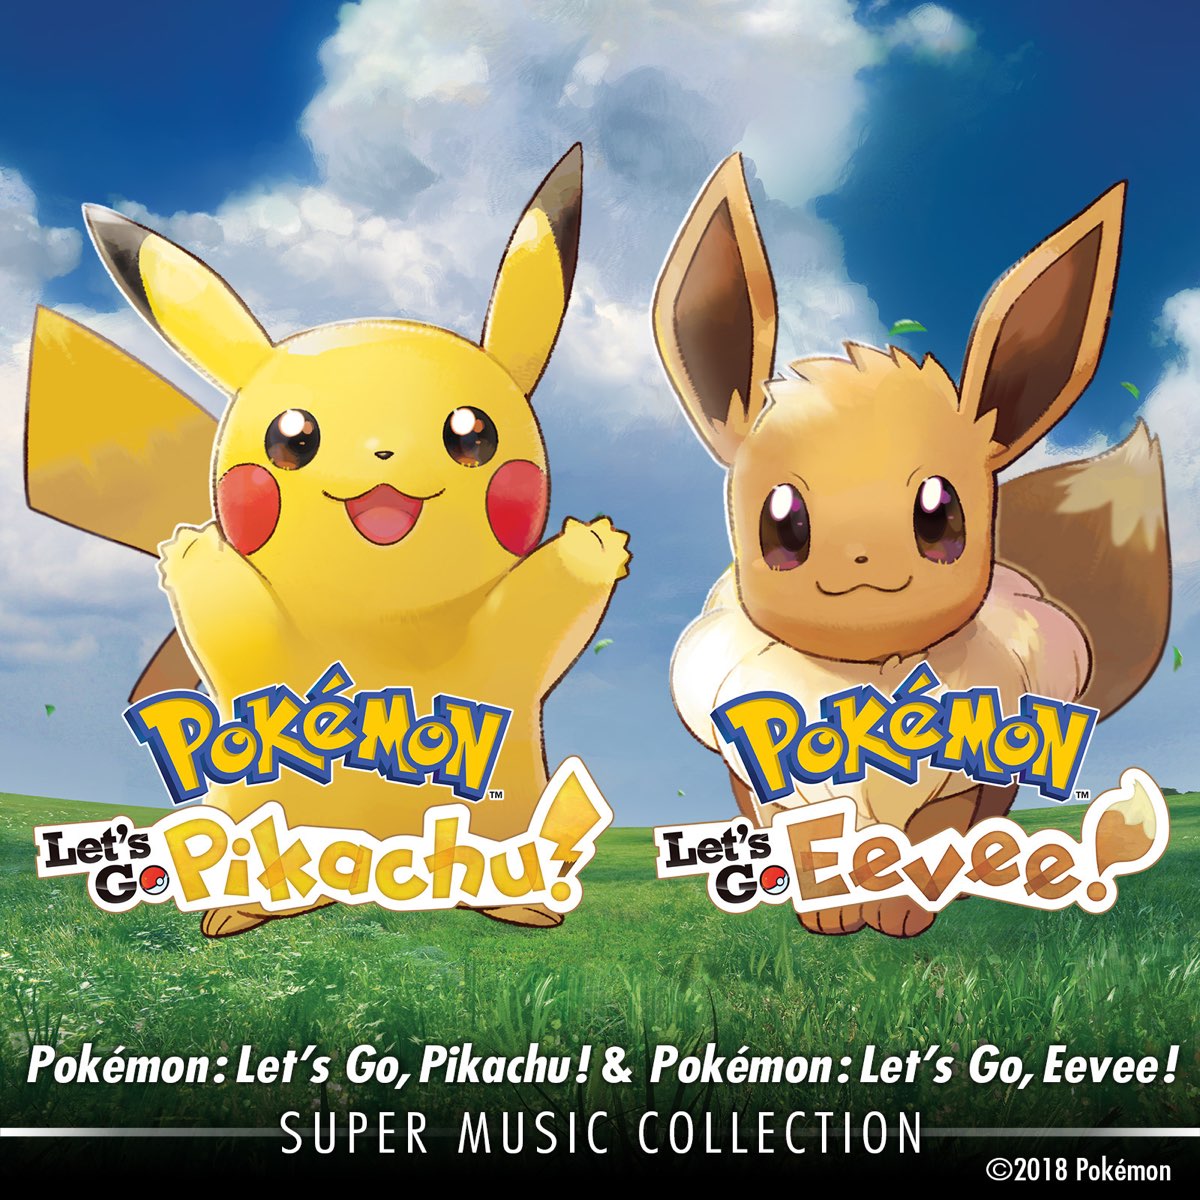 Pokémon: Let's Go, Pikachu! & Pokémon: Let's Go, Eevee! Super Music  Collection - Album by GAME FREAK - Apple Music